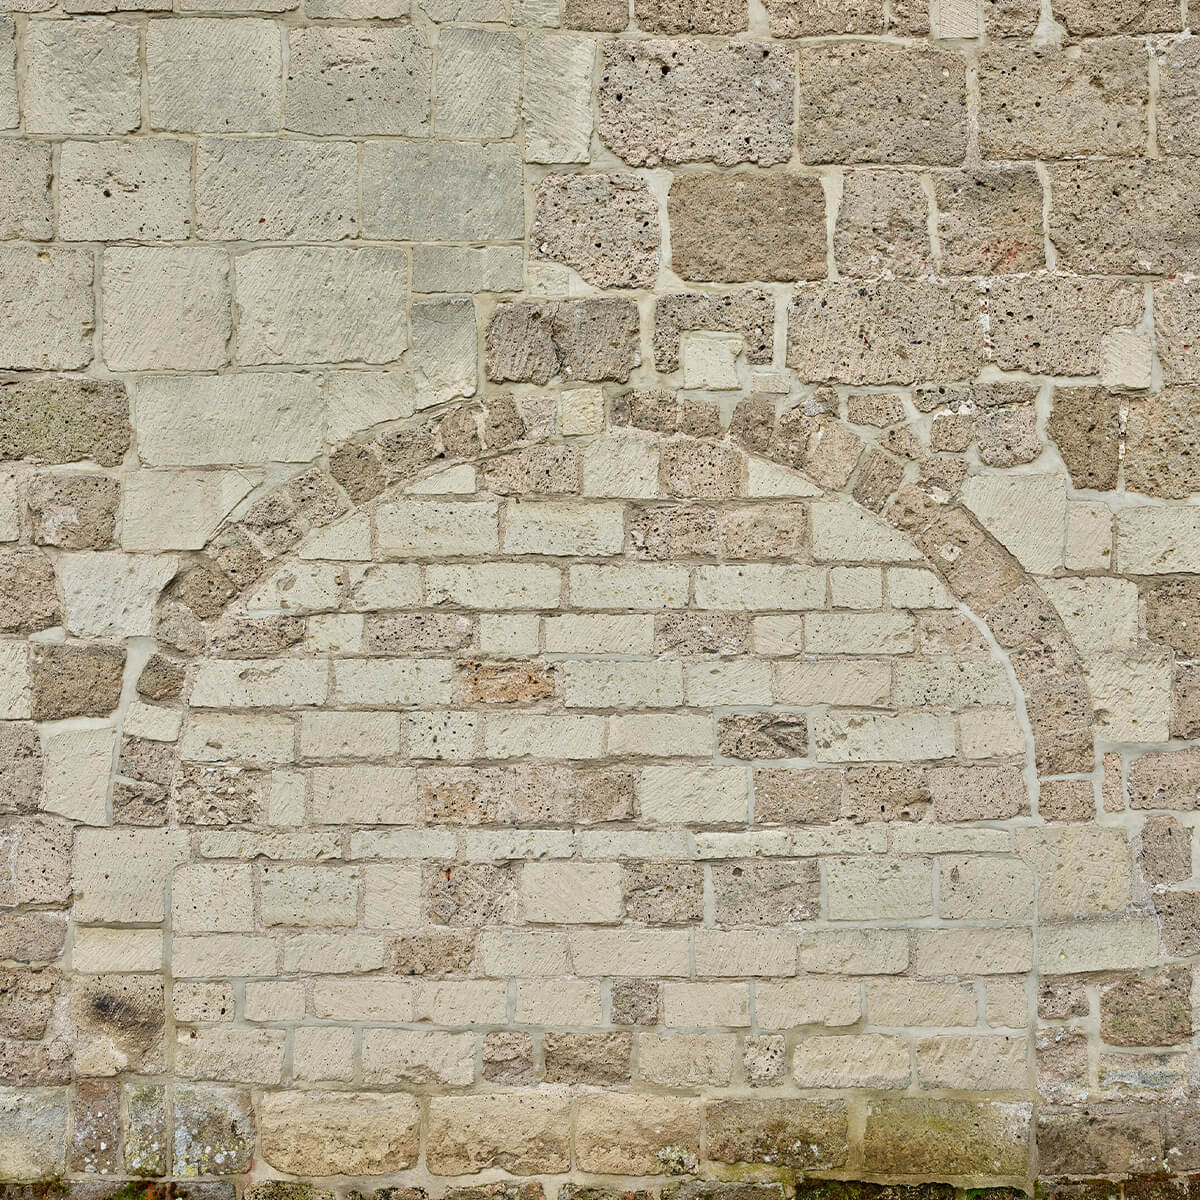 Oude stenen muur met boog